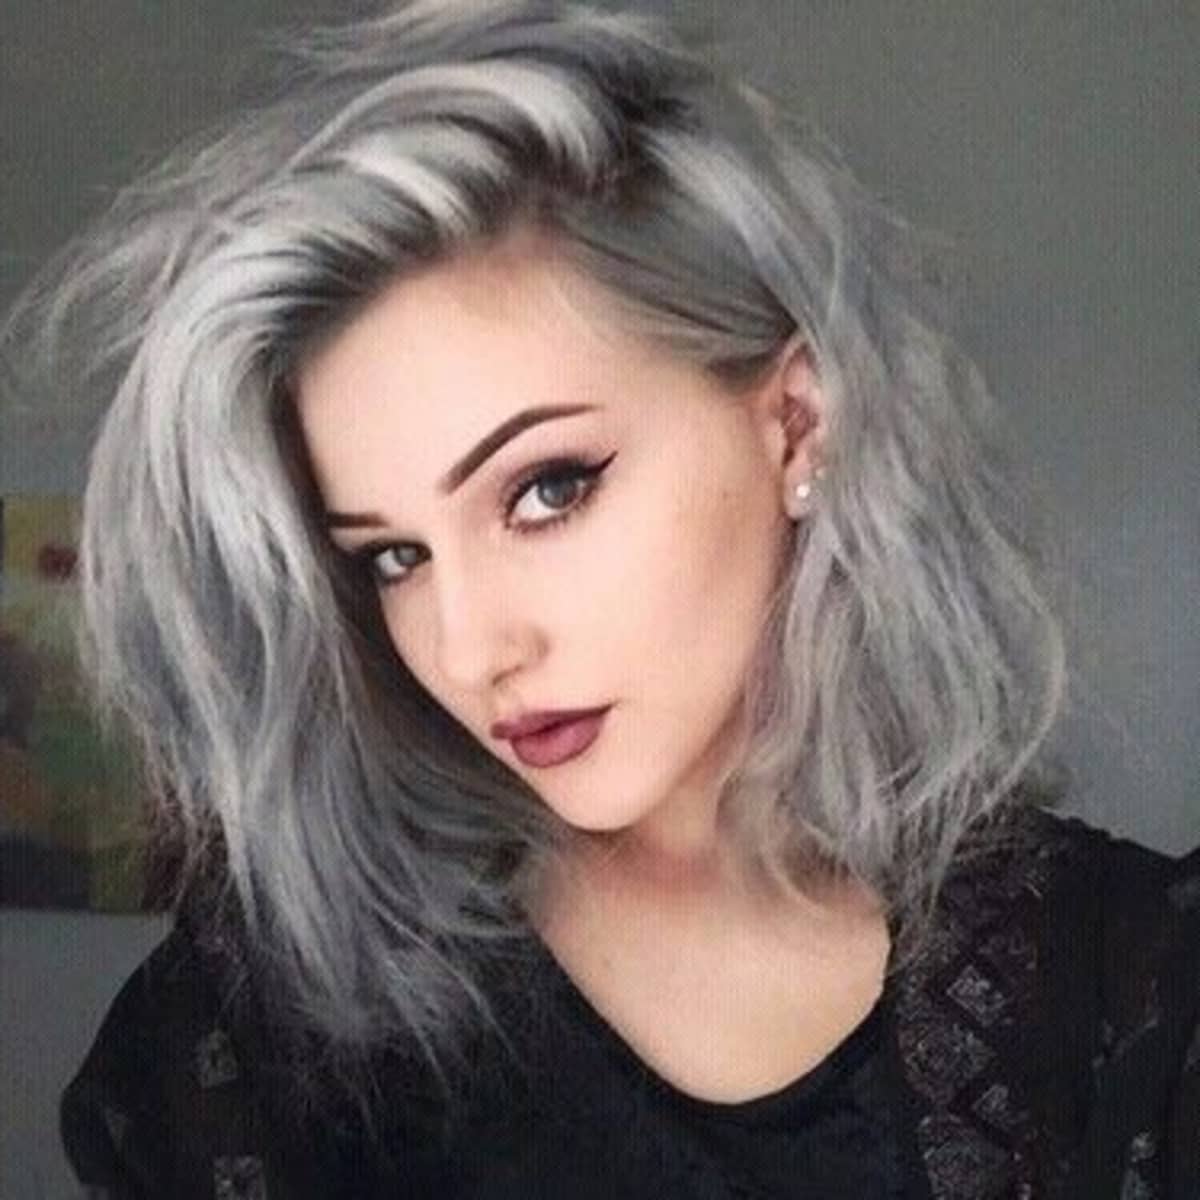 Ash grey hair